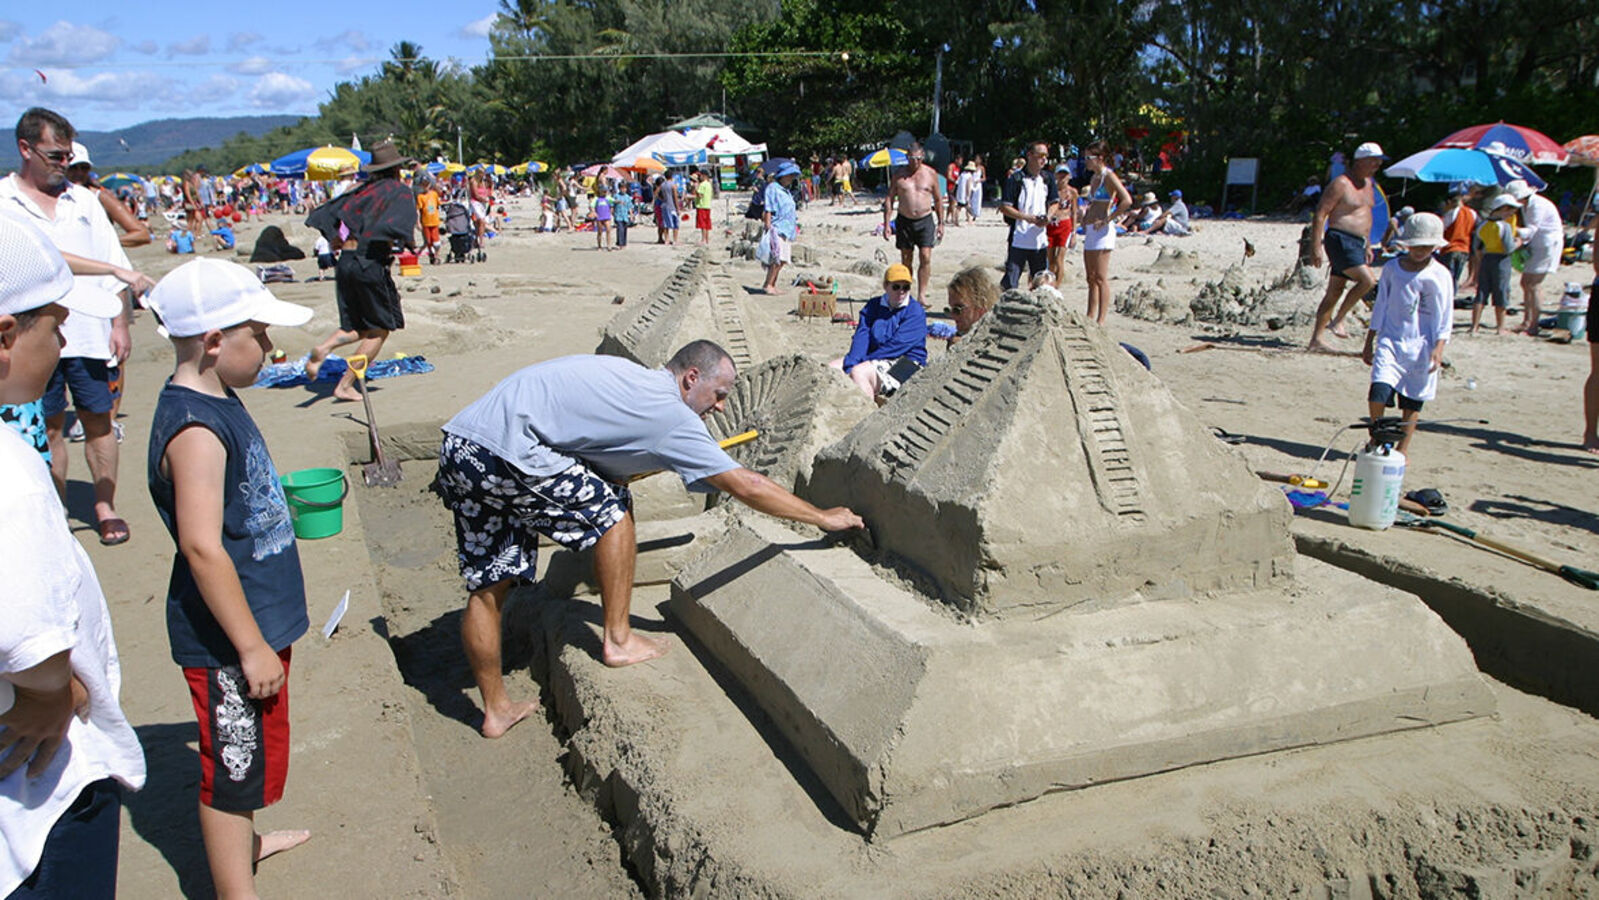 Port Douglas Four Mile Beach sand sculptures festival events